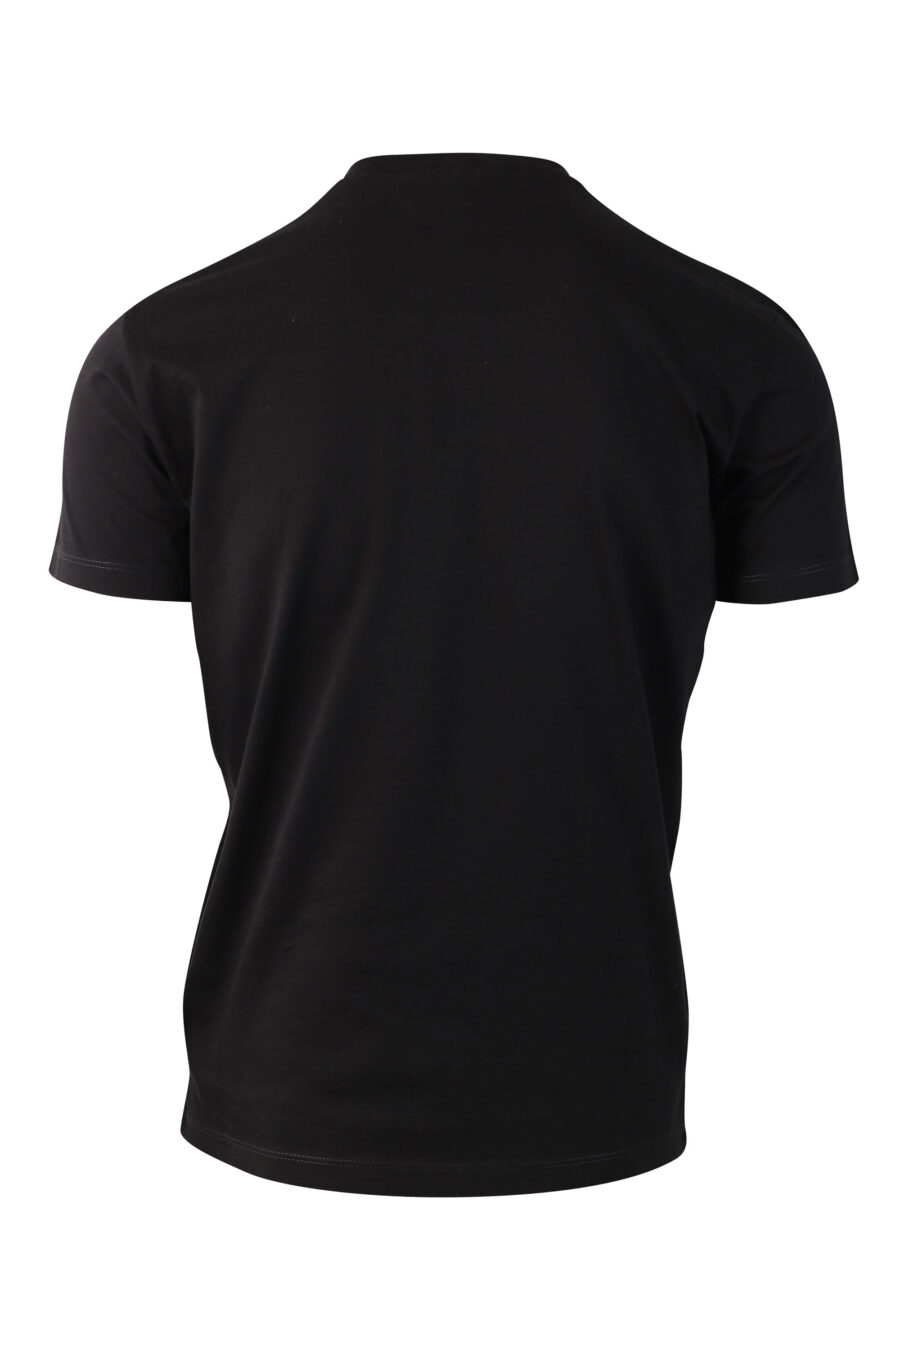 Camiseta negra con minilogo - IMG 9996